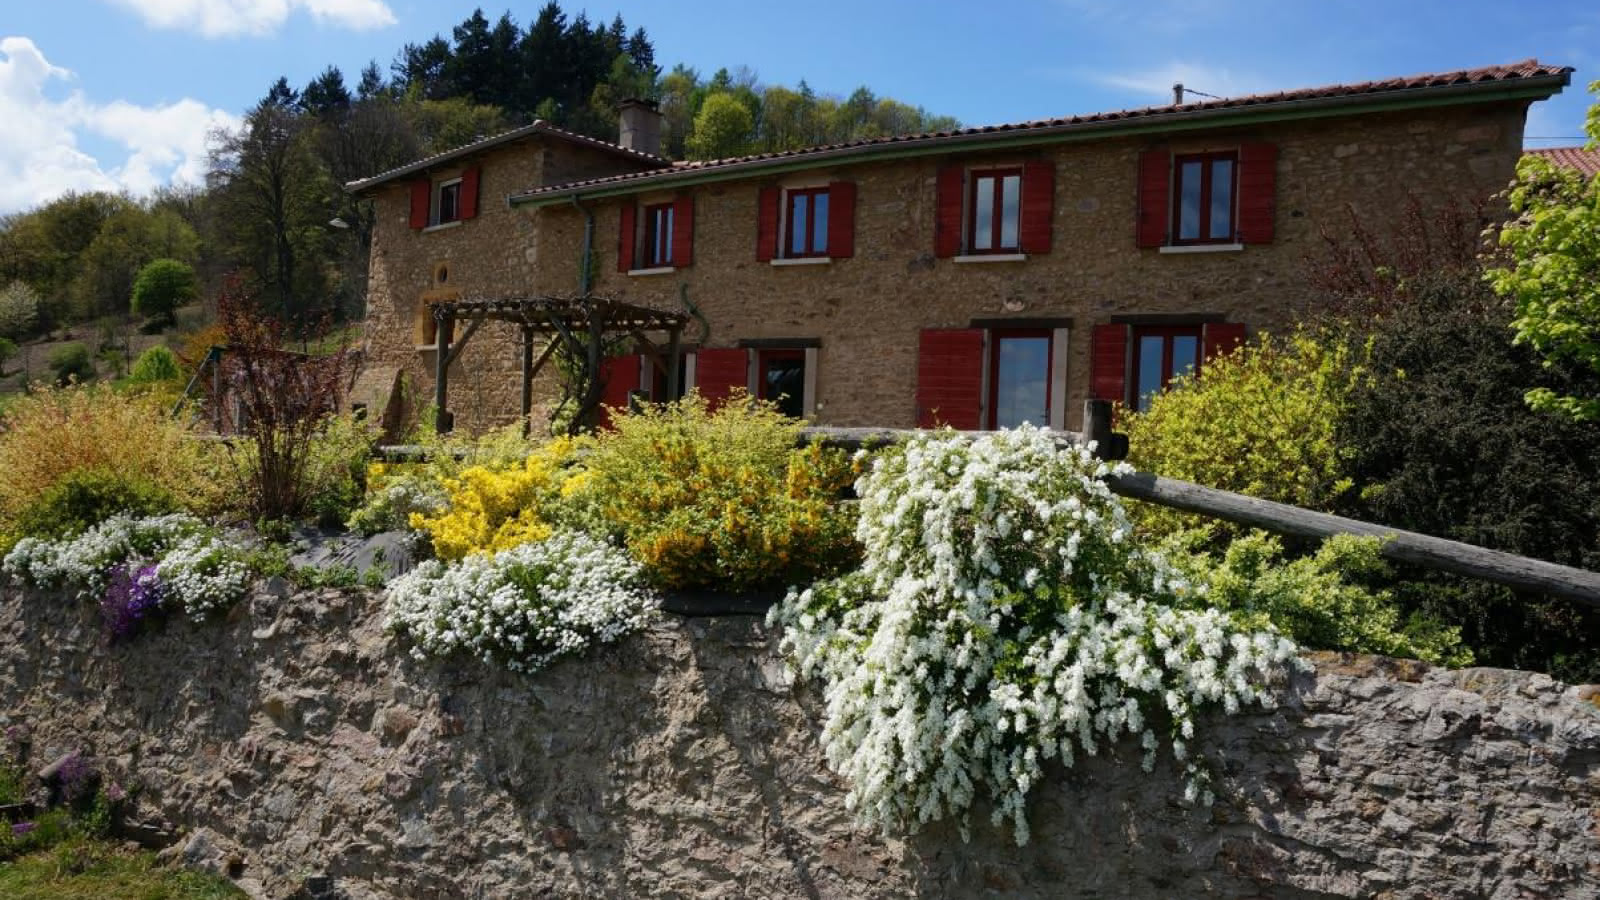 Chambres d'hôtes 'La Ferme du Thiollet' à MONTROMANT/YZERON dans le Rhône: les extérieurs fleuris.